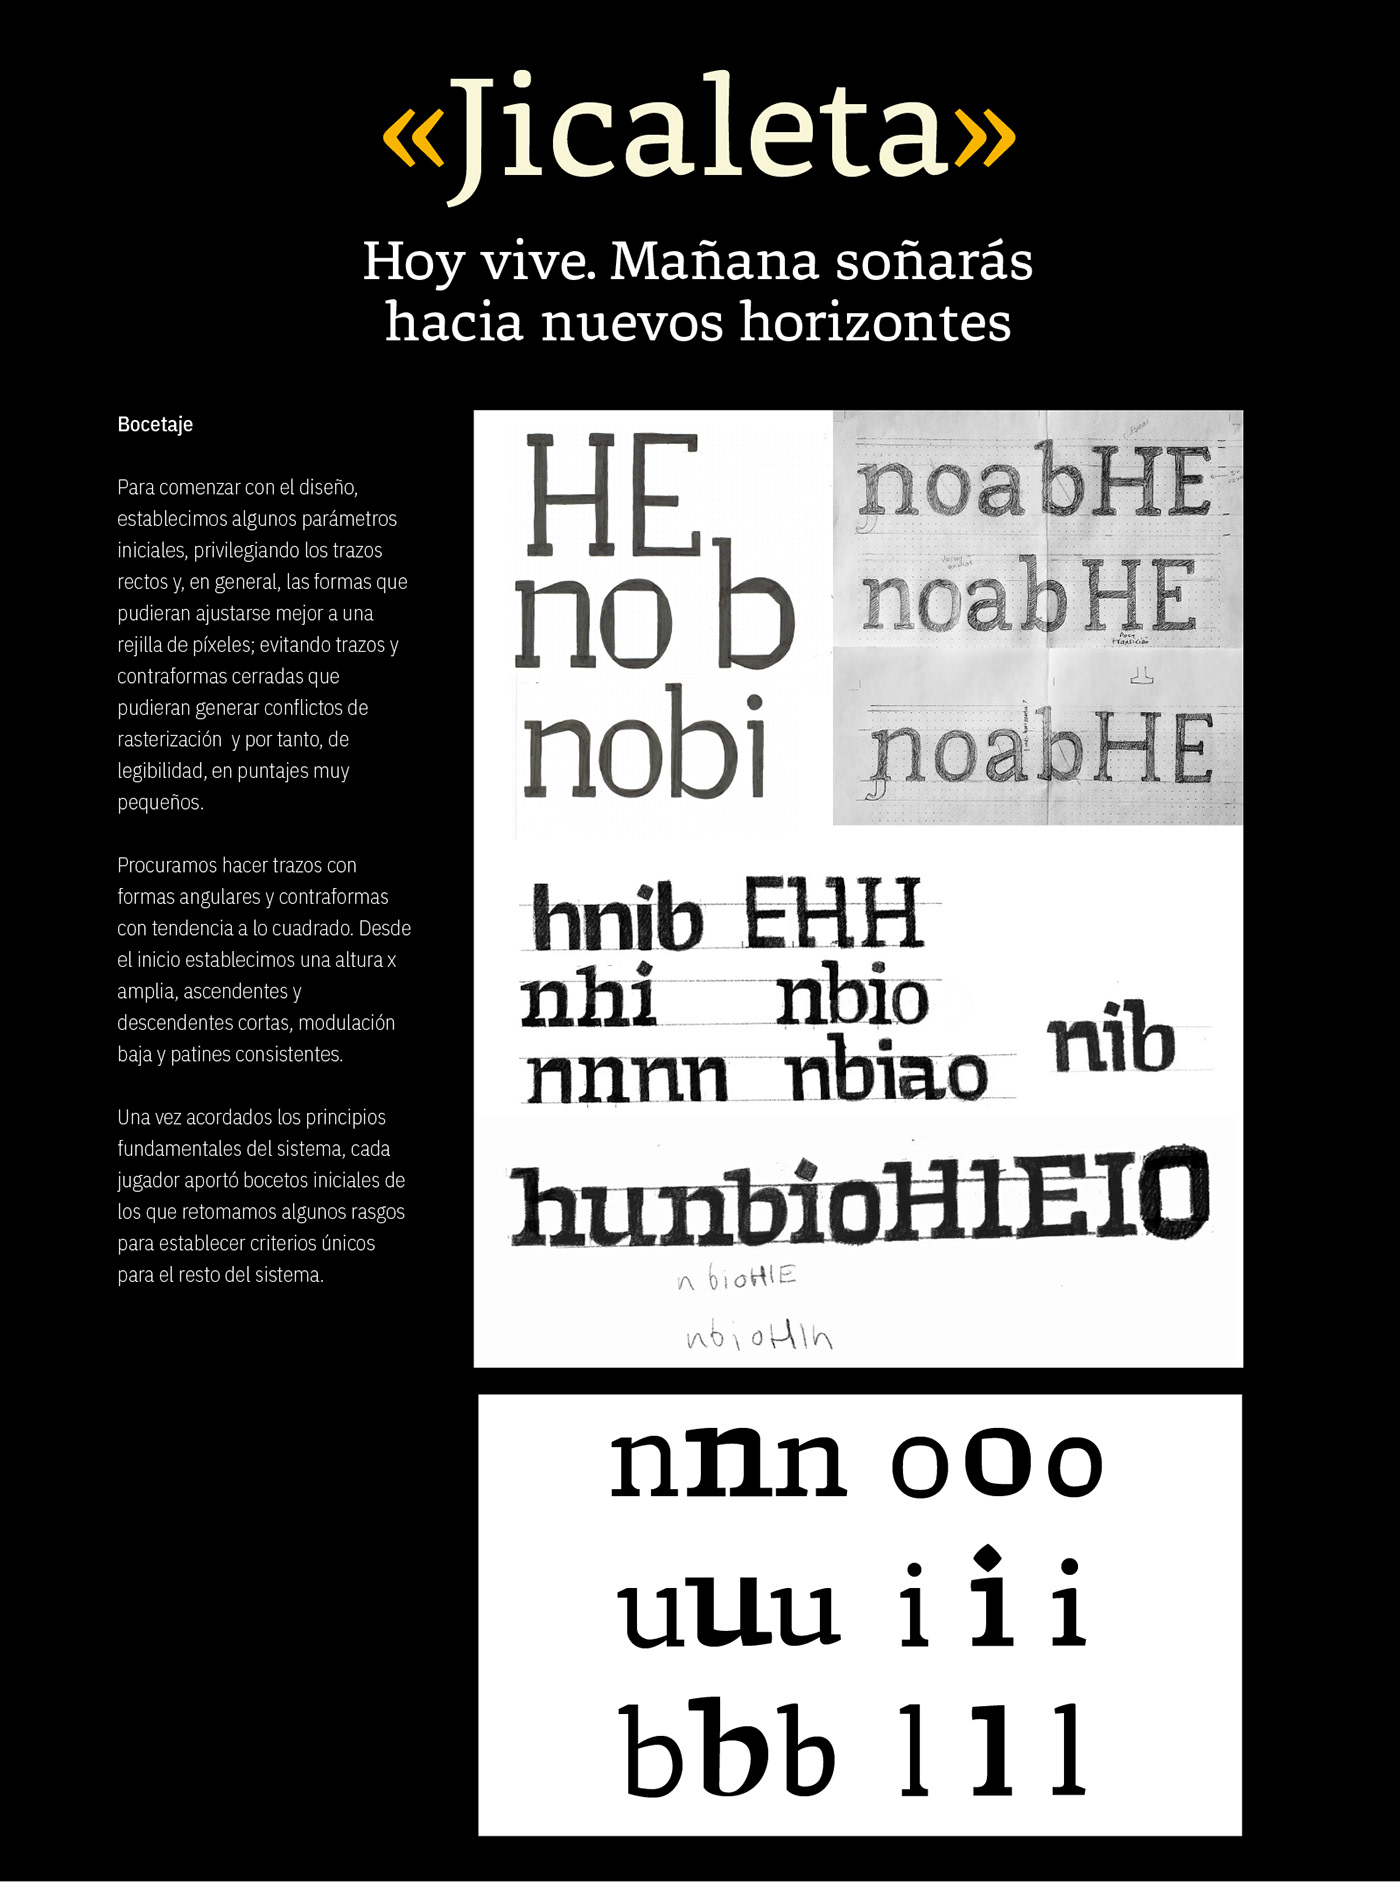 font mexico tipografia torneo tipográfico type type design Typeface